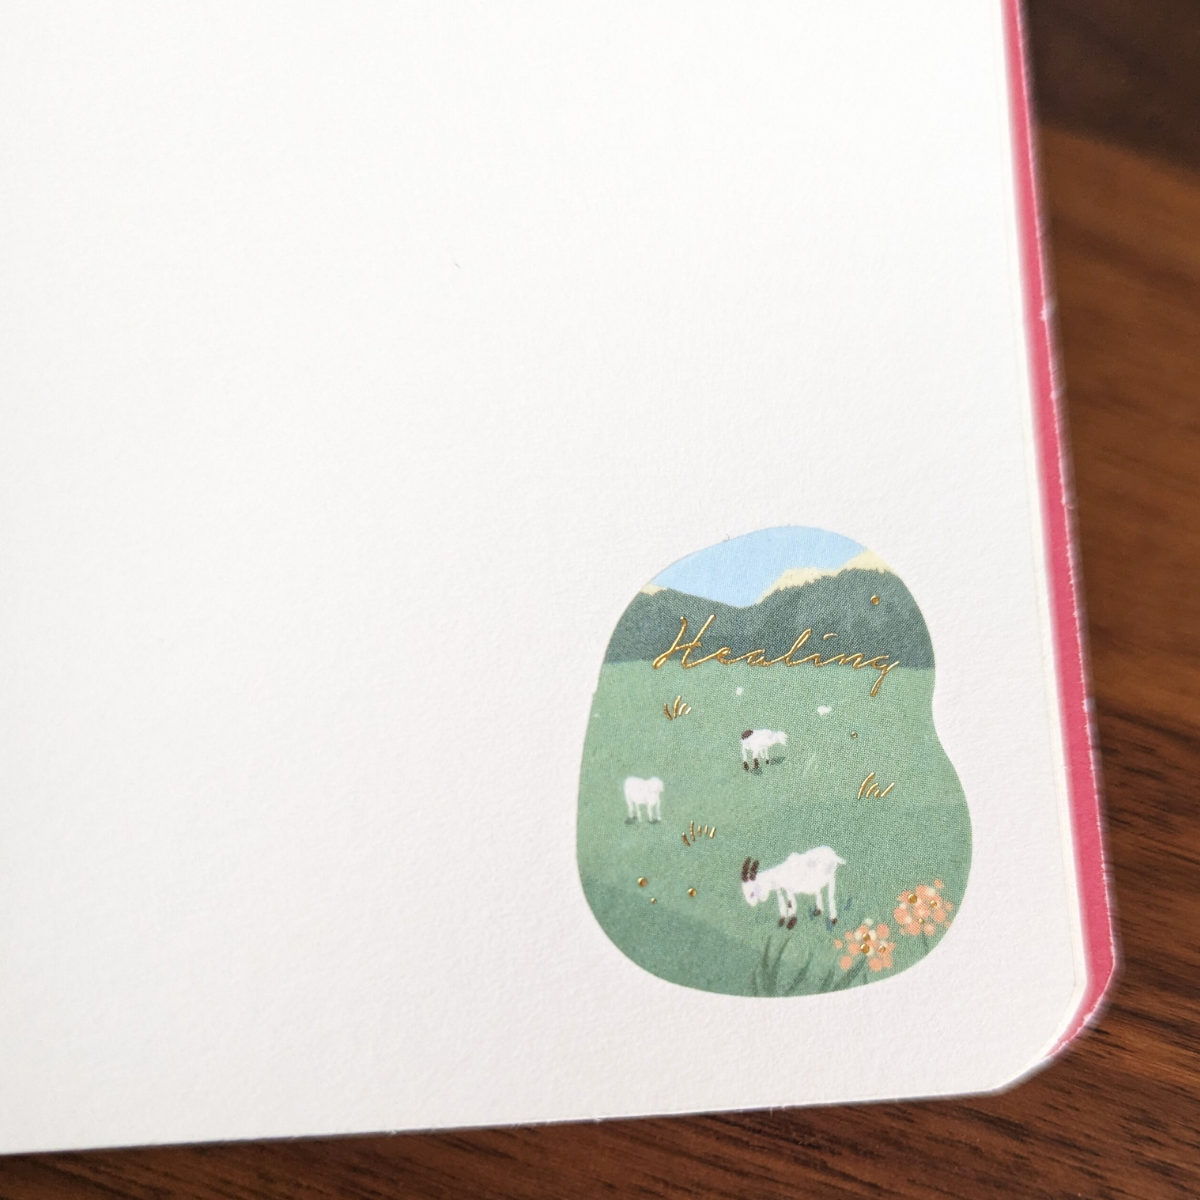 Sticker d'une prairie avec des chèvres.